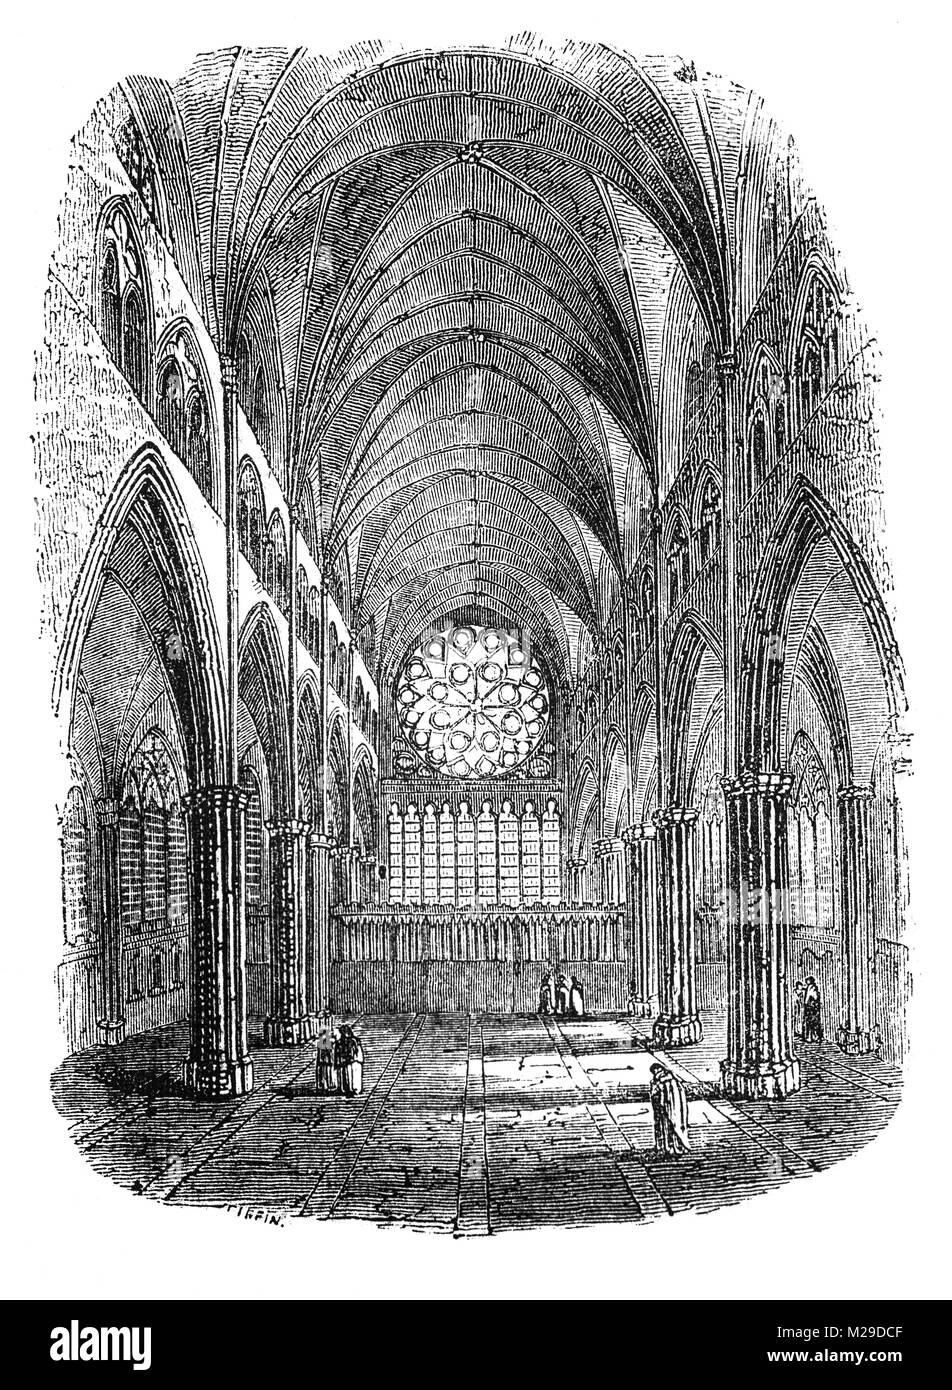 La fenêtre de l'est de la quatrième St Paul's à partir de la chorale. Généralement appelé le vieux St Paul's, le bâtiment a été commencé par les Normands après l'incendie 1087 et consacrée en 1240. Londres, Angleterre. Banque D'Images